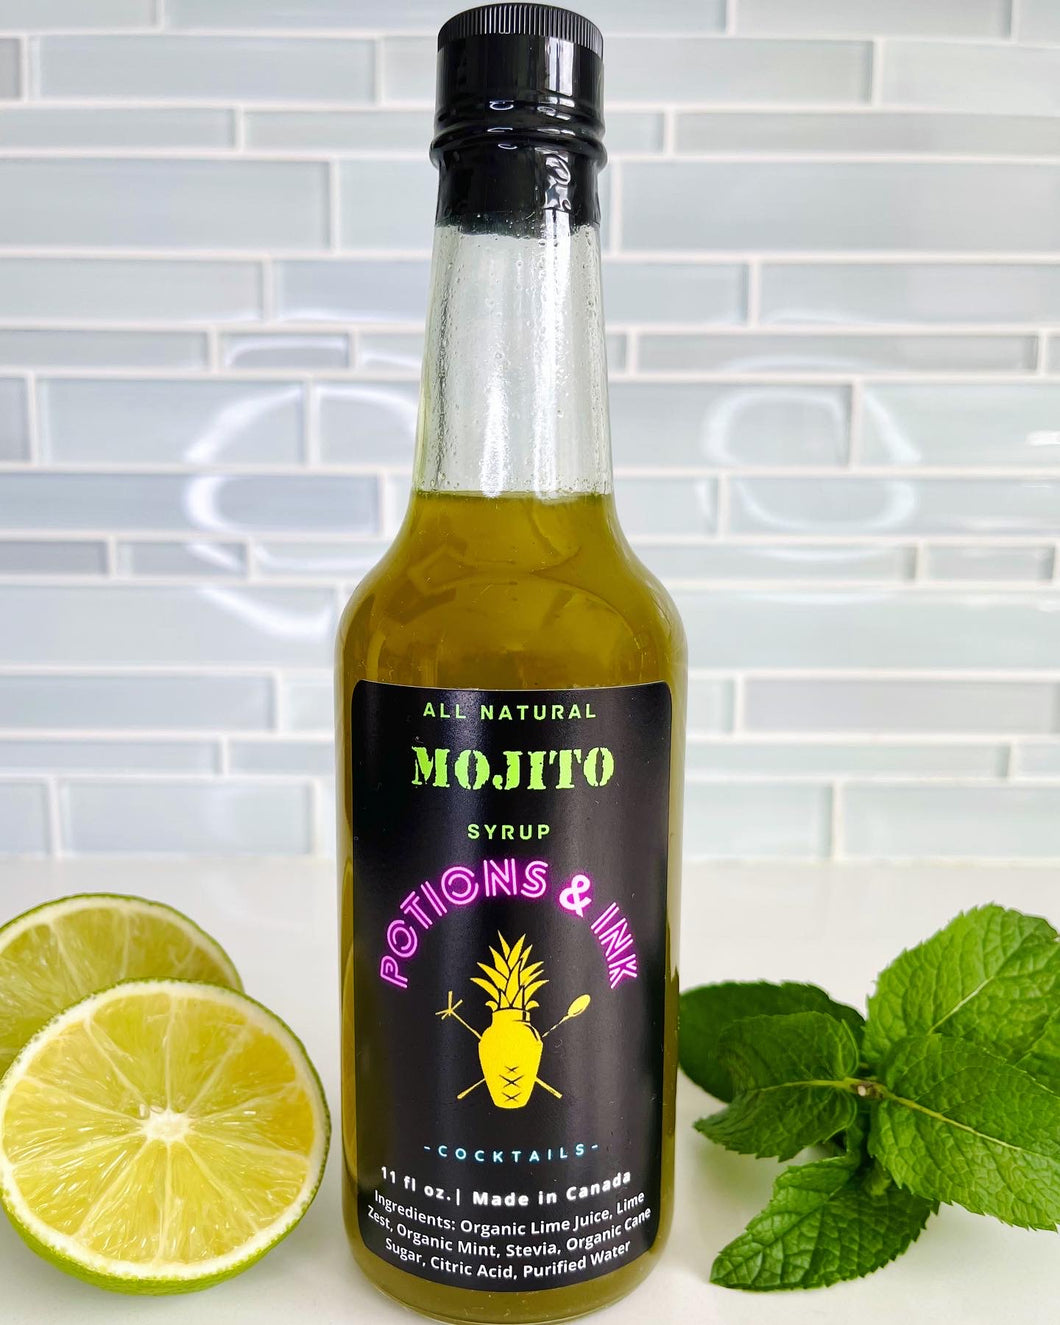 All Natural Mojito Syrup